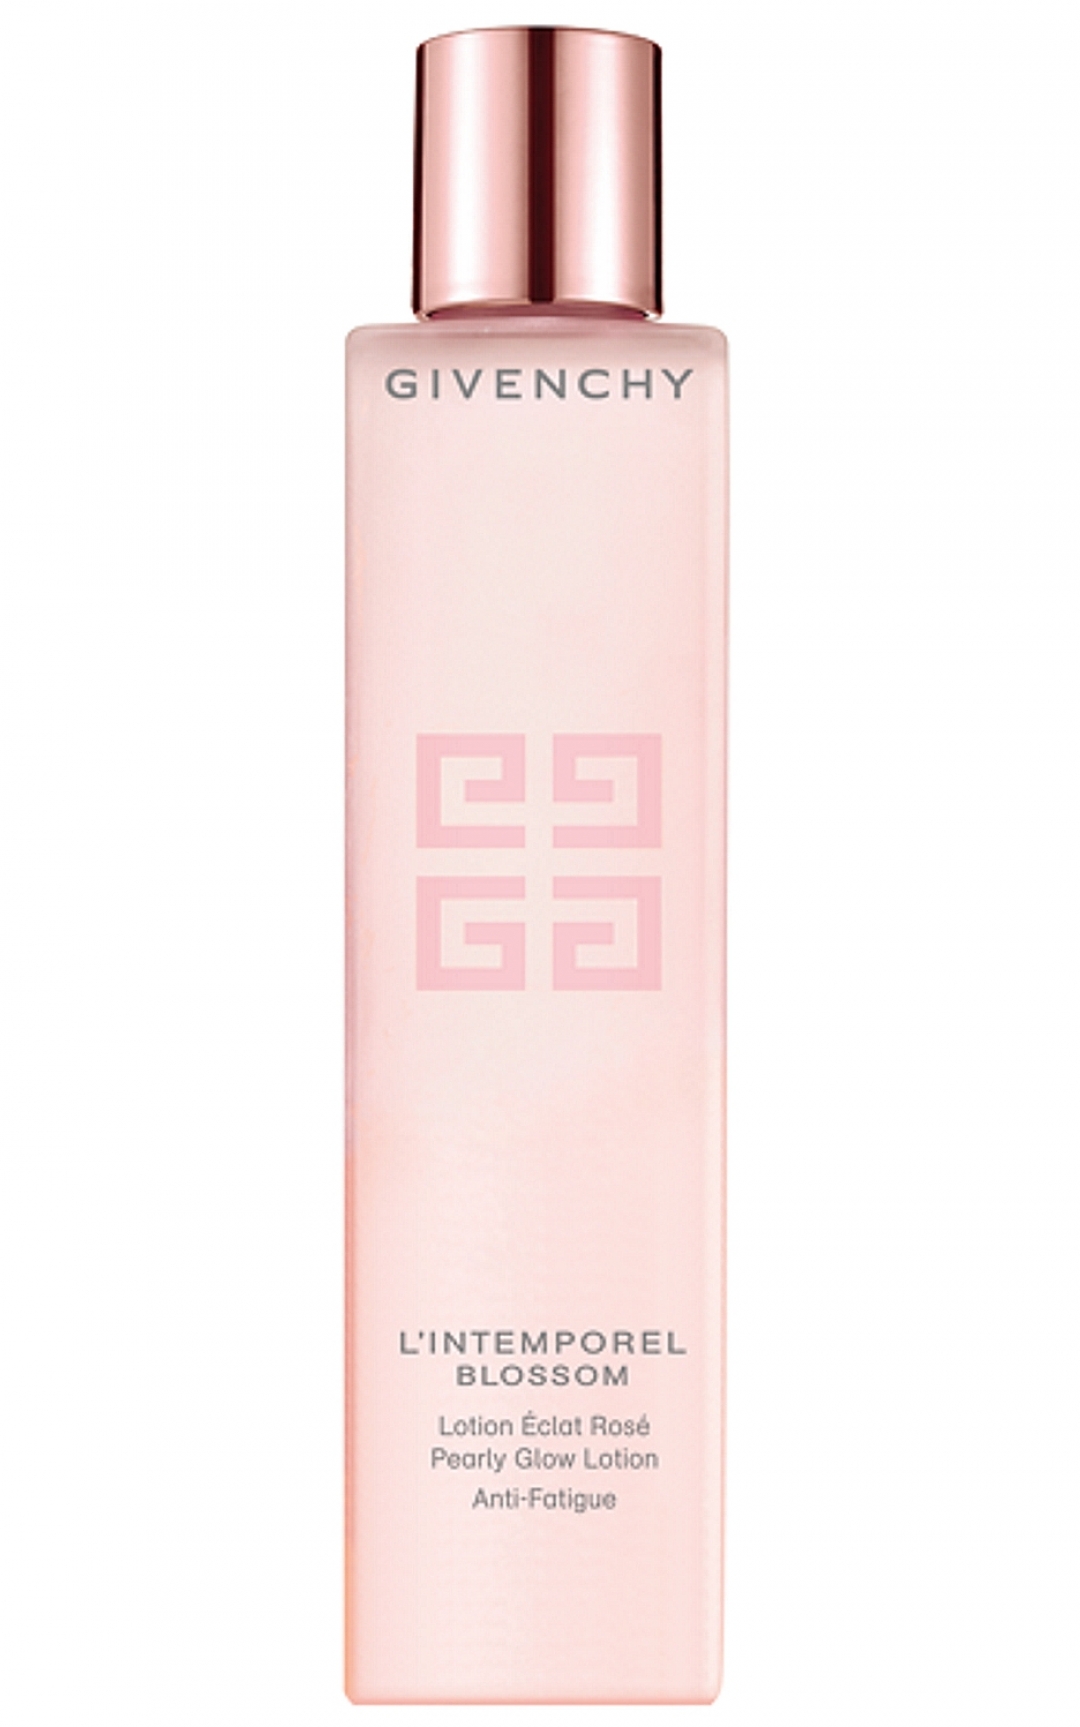 Givenchy blossom. Givenchy intemporel Blossom. Givenchy l intemporel Blossom. Лосьон живанши l'intemporel. Givenchy l'intemporel Blossom Serum.